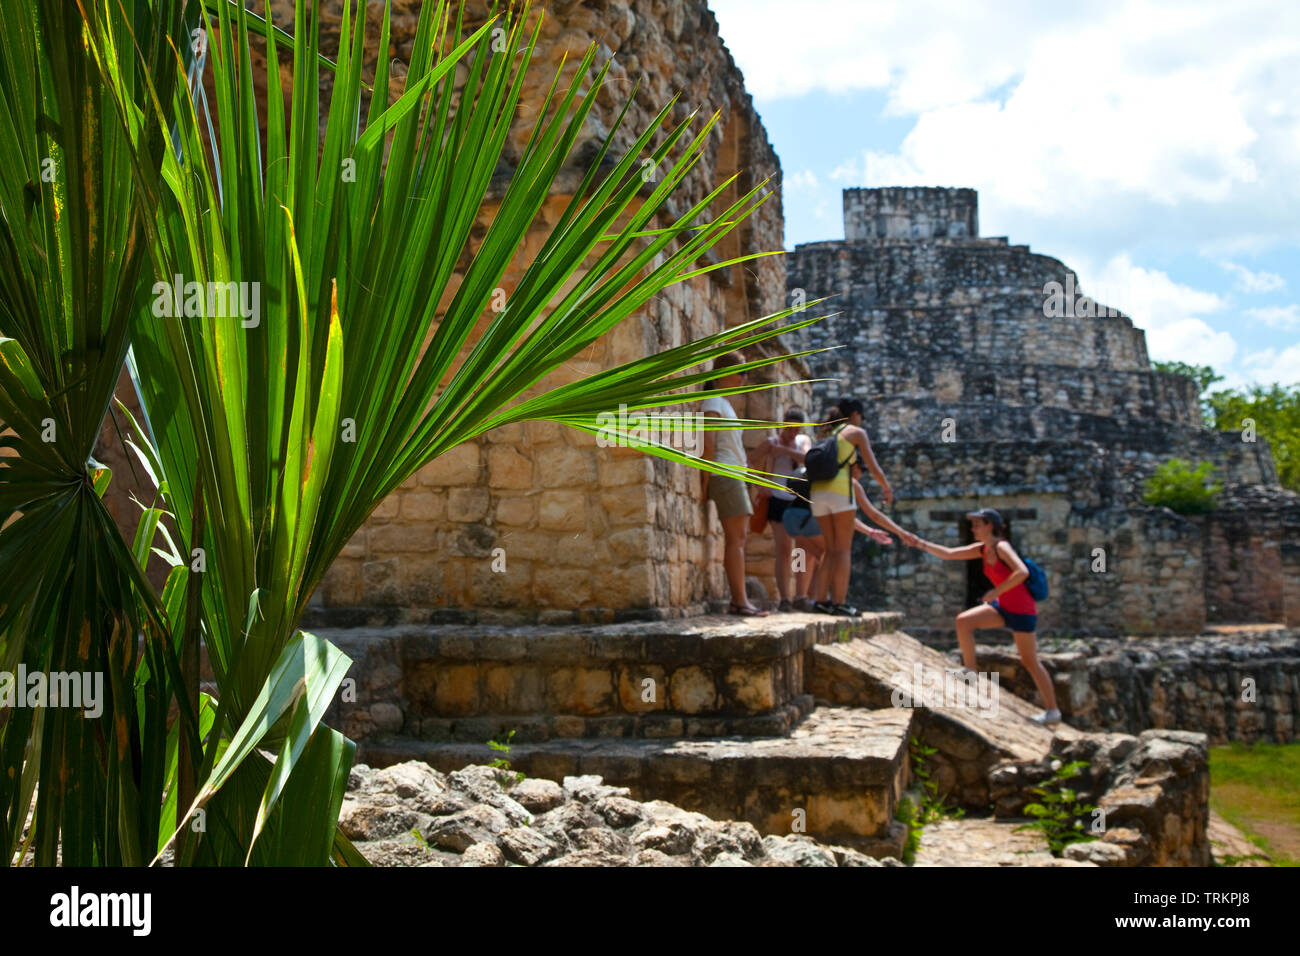 Arco Entrada y al fondo El Observatorio. Yacimiento Arqueológico Maya de Ek Balam. Estado de Yucatán, Península de Yucatán, México, América Stock Photo